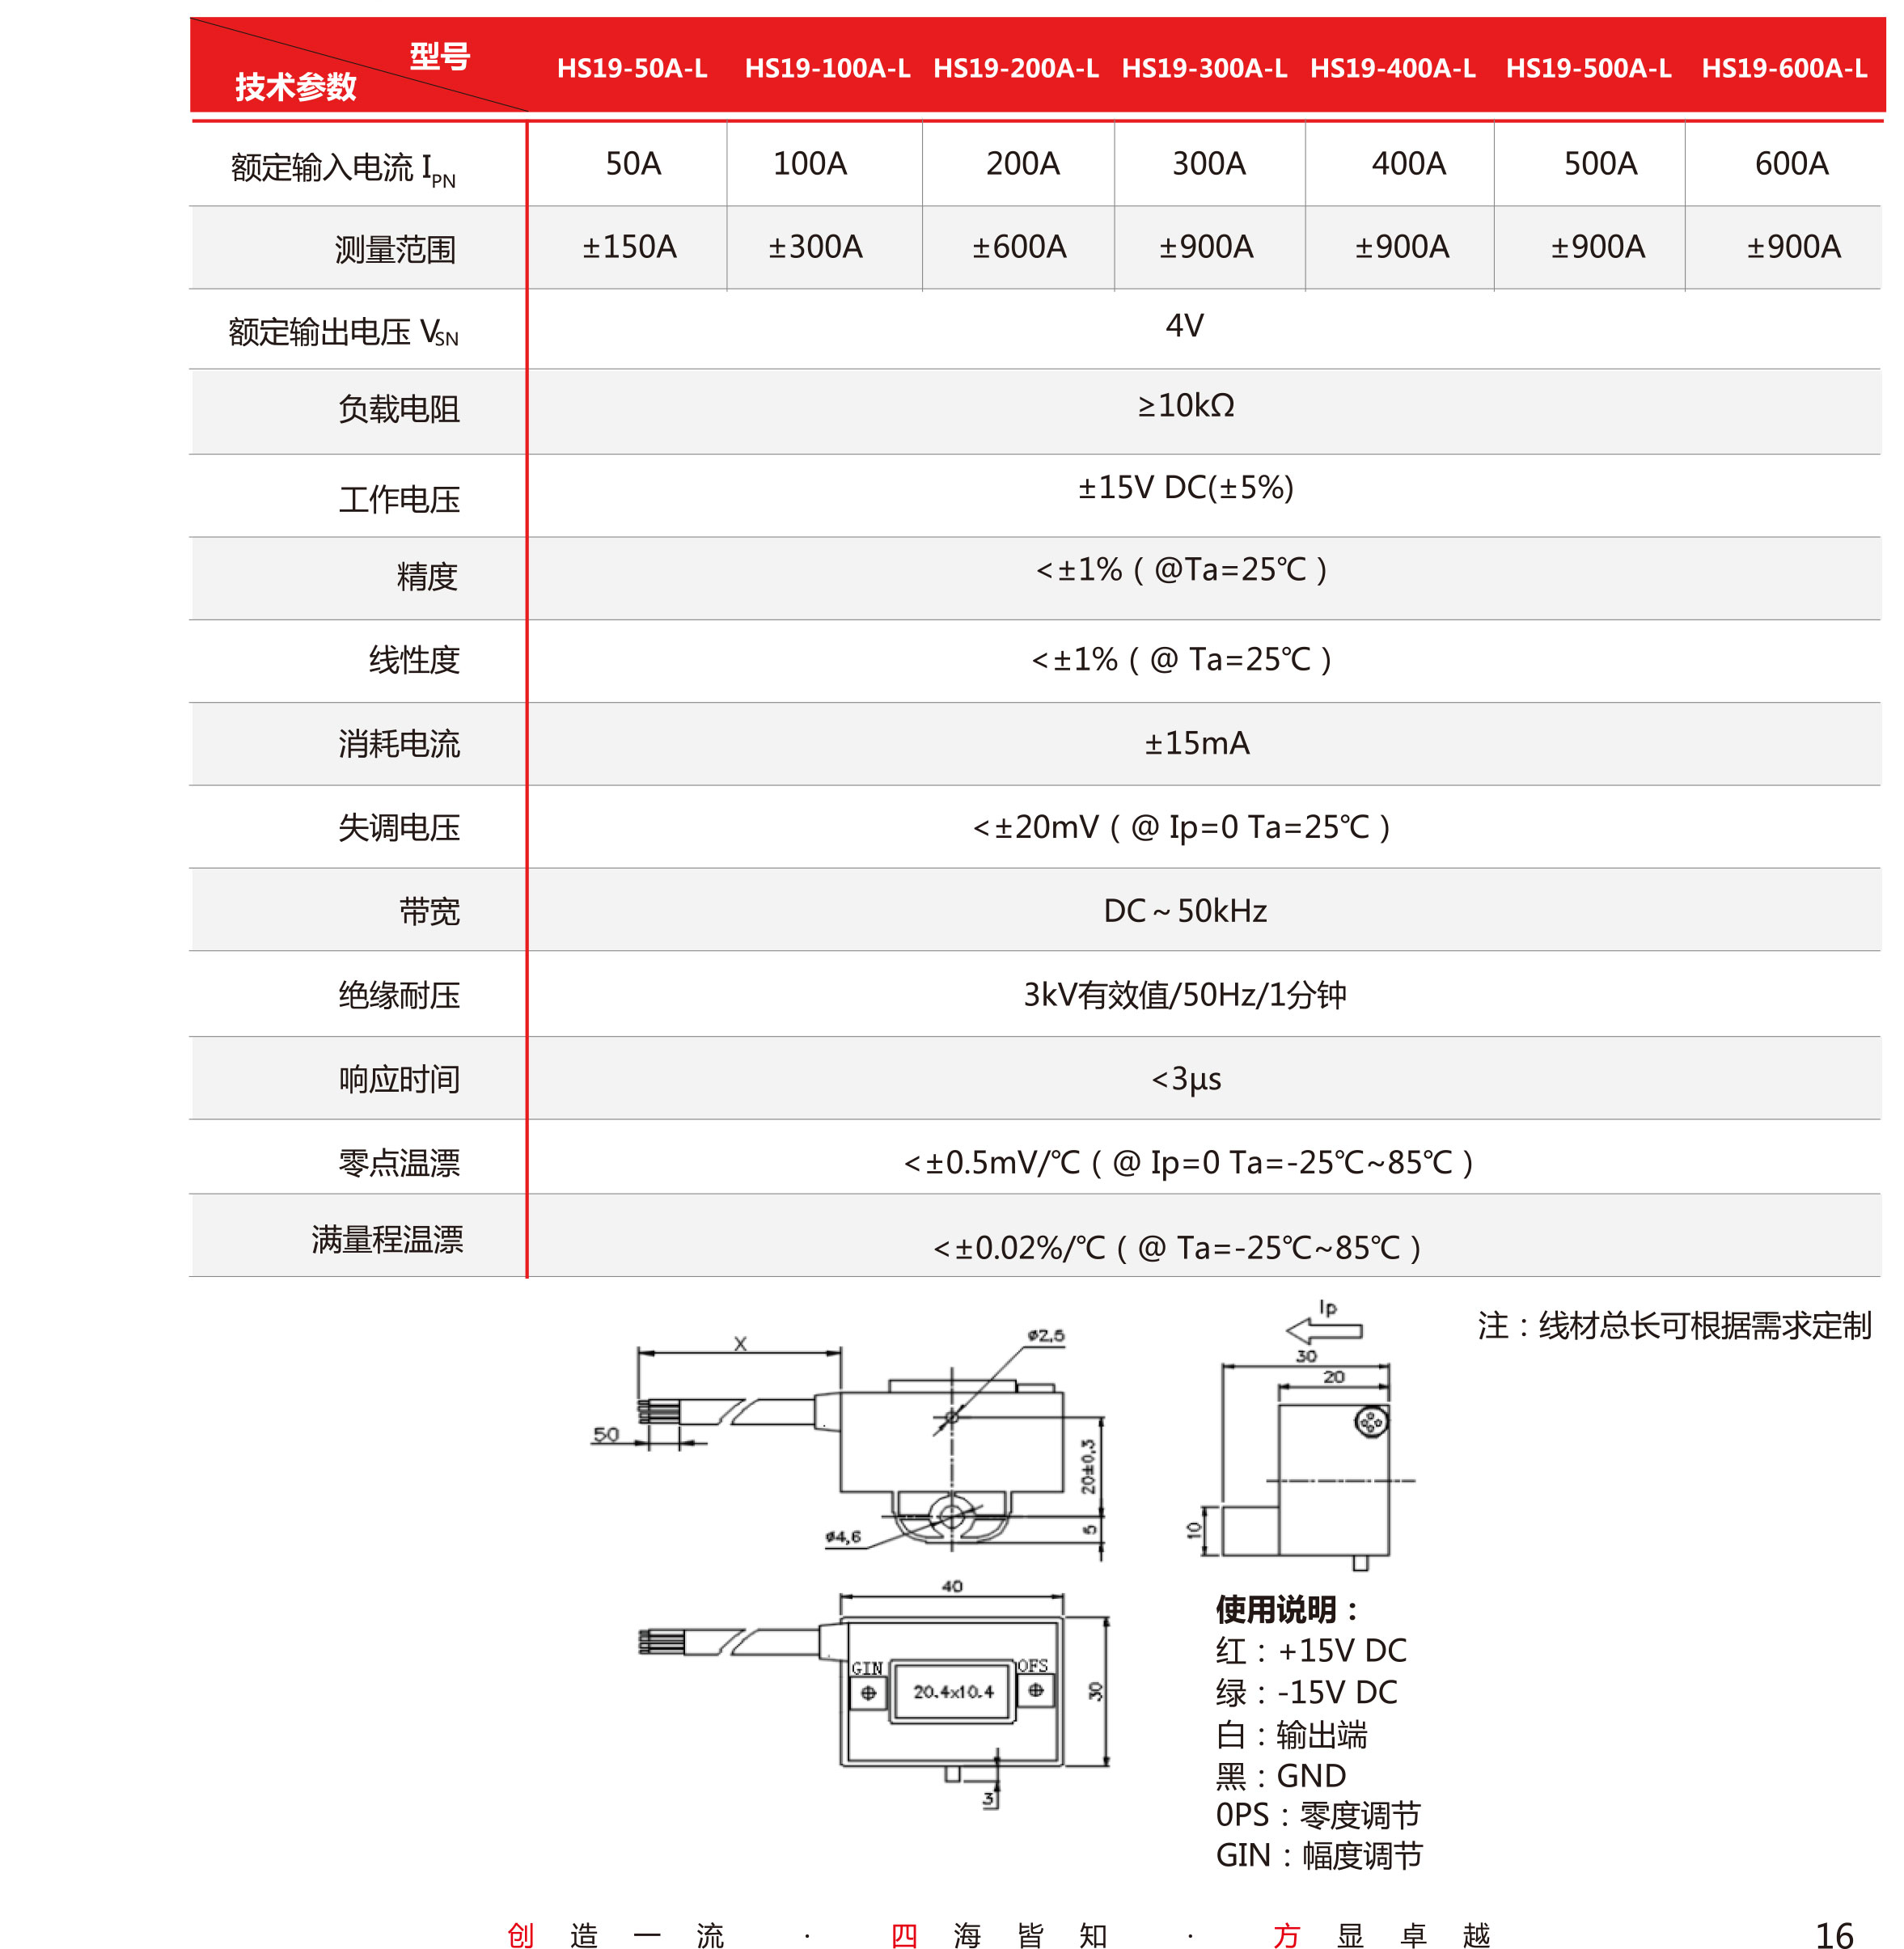 5传感器-V5-2019-北京-单页-17.jpg